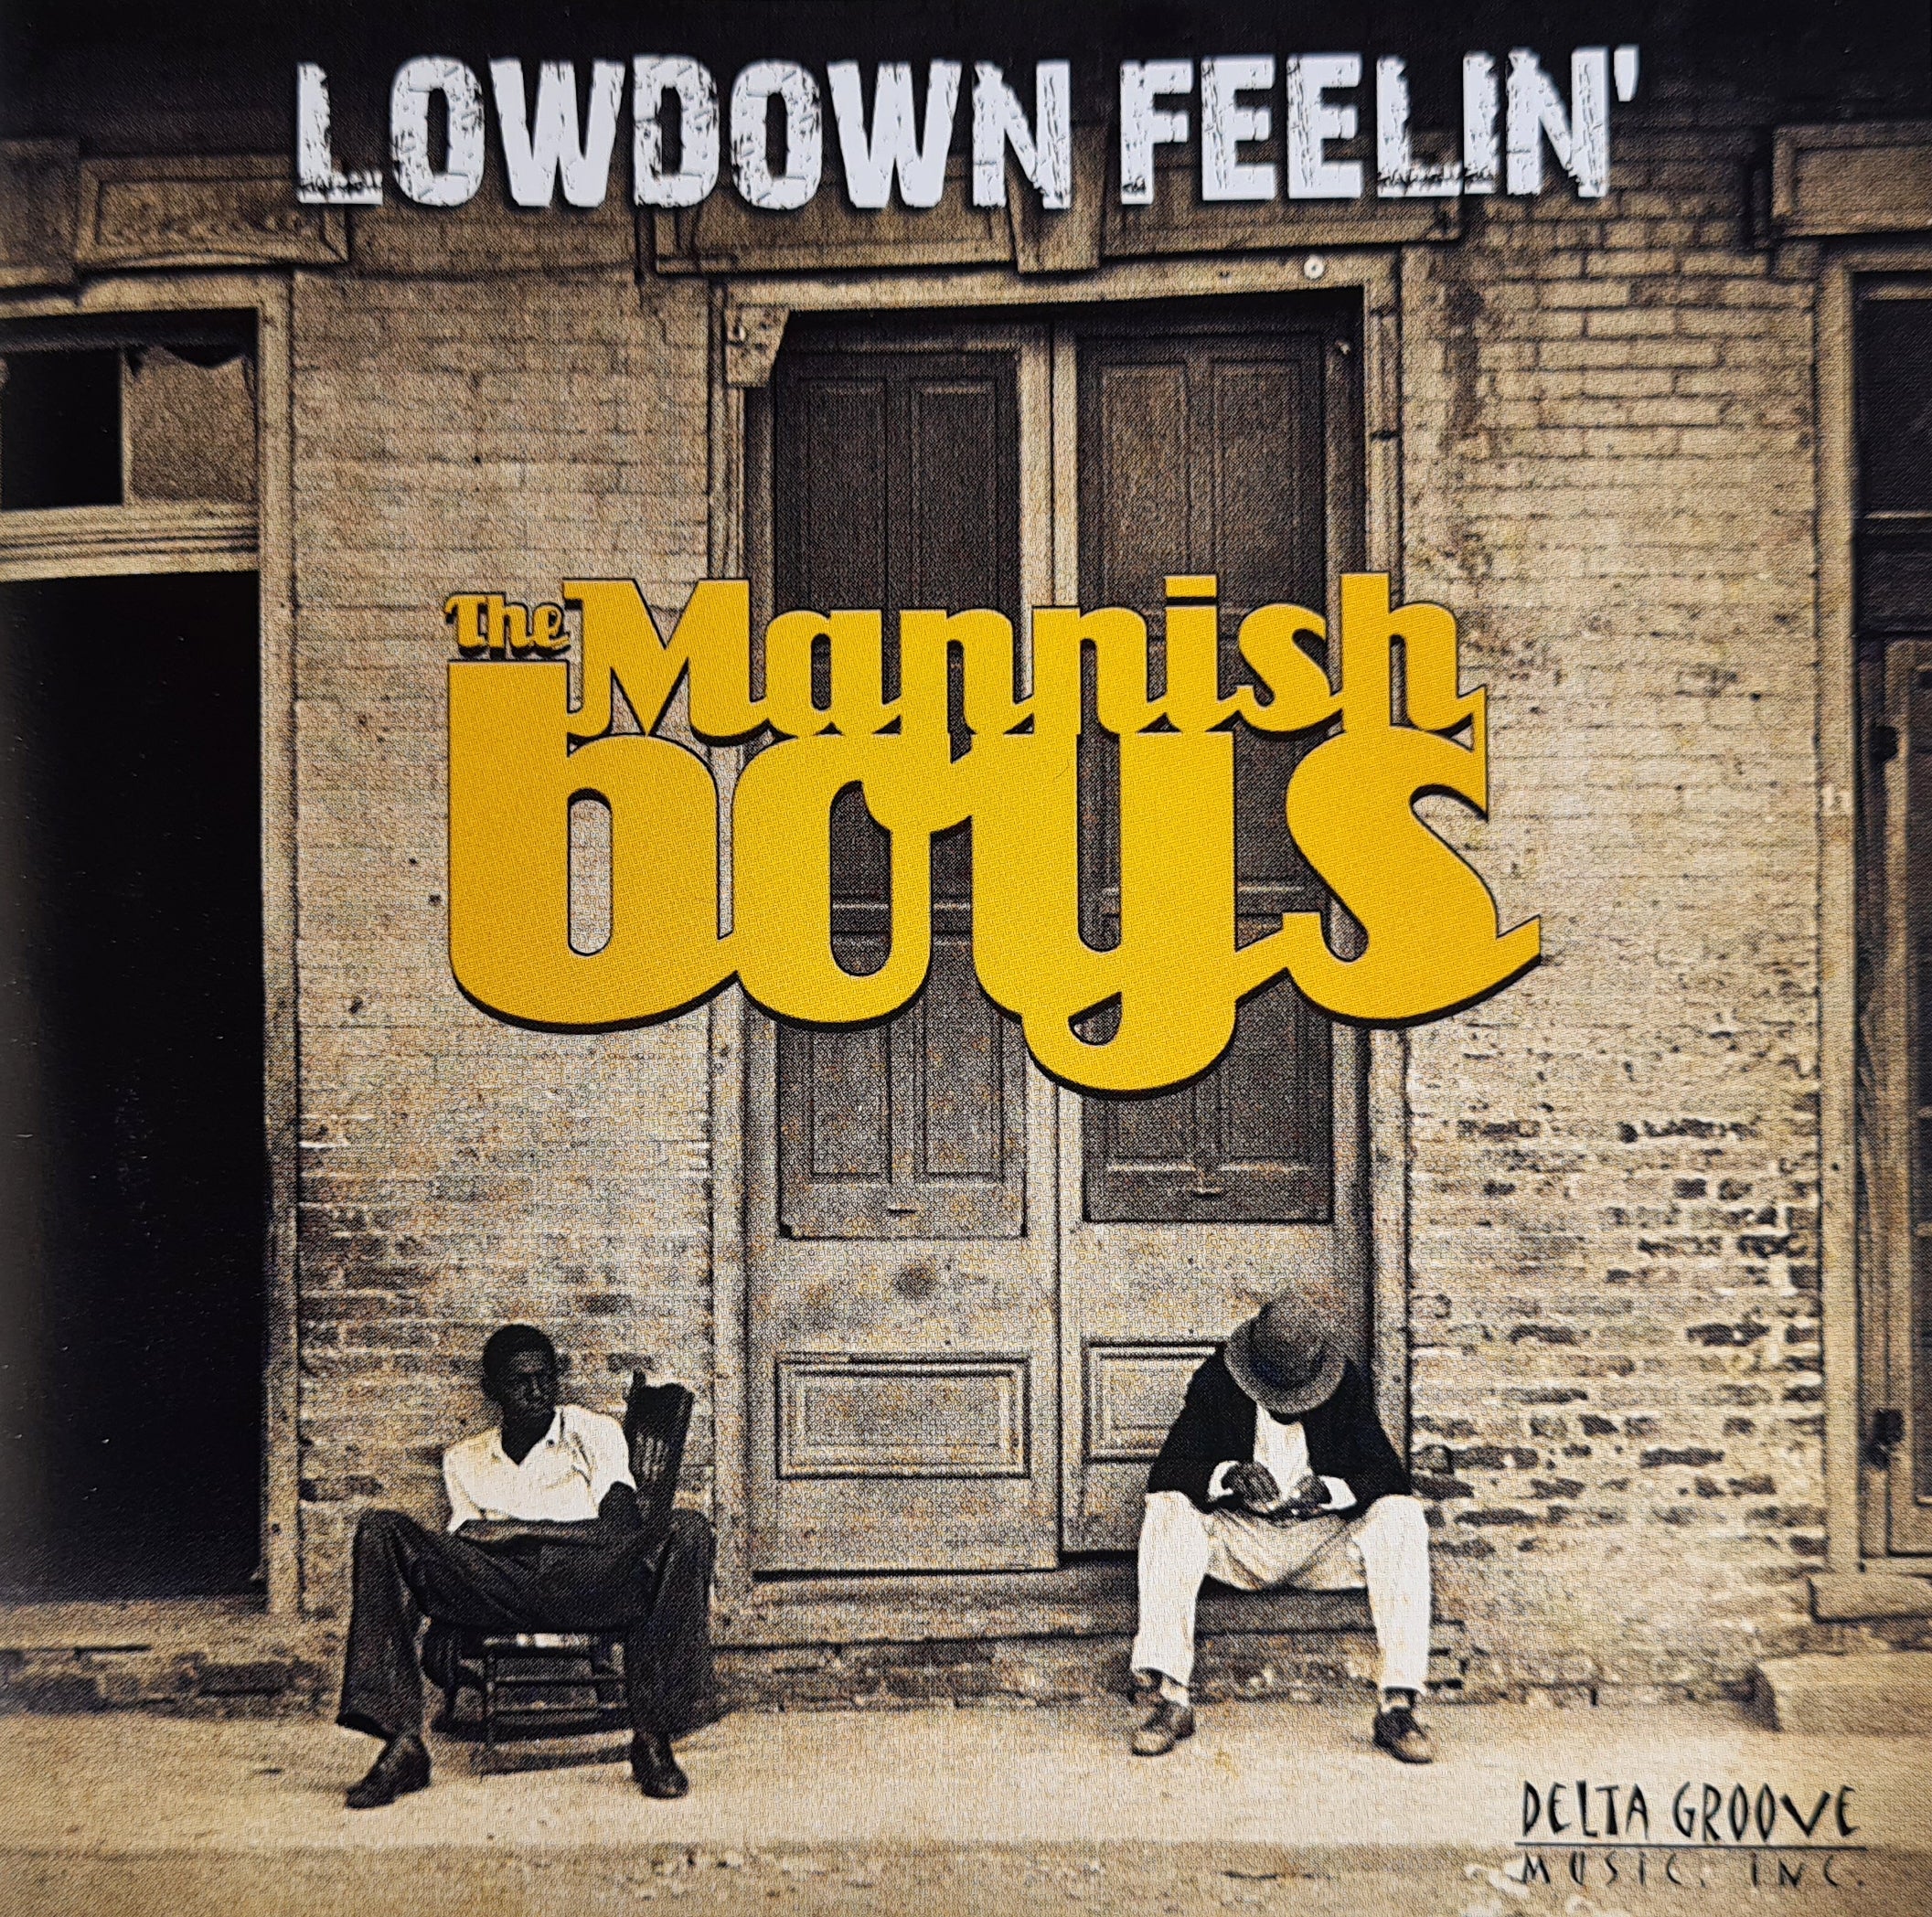 The Mannish Boys - Lowdown Feelin' (CD)